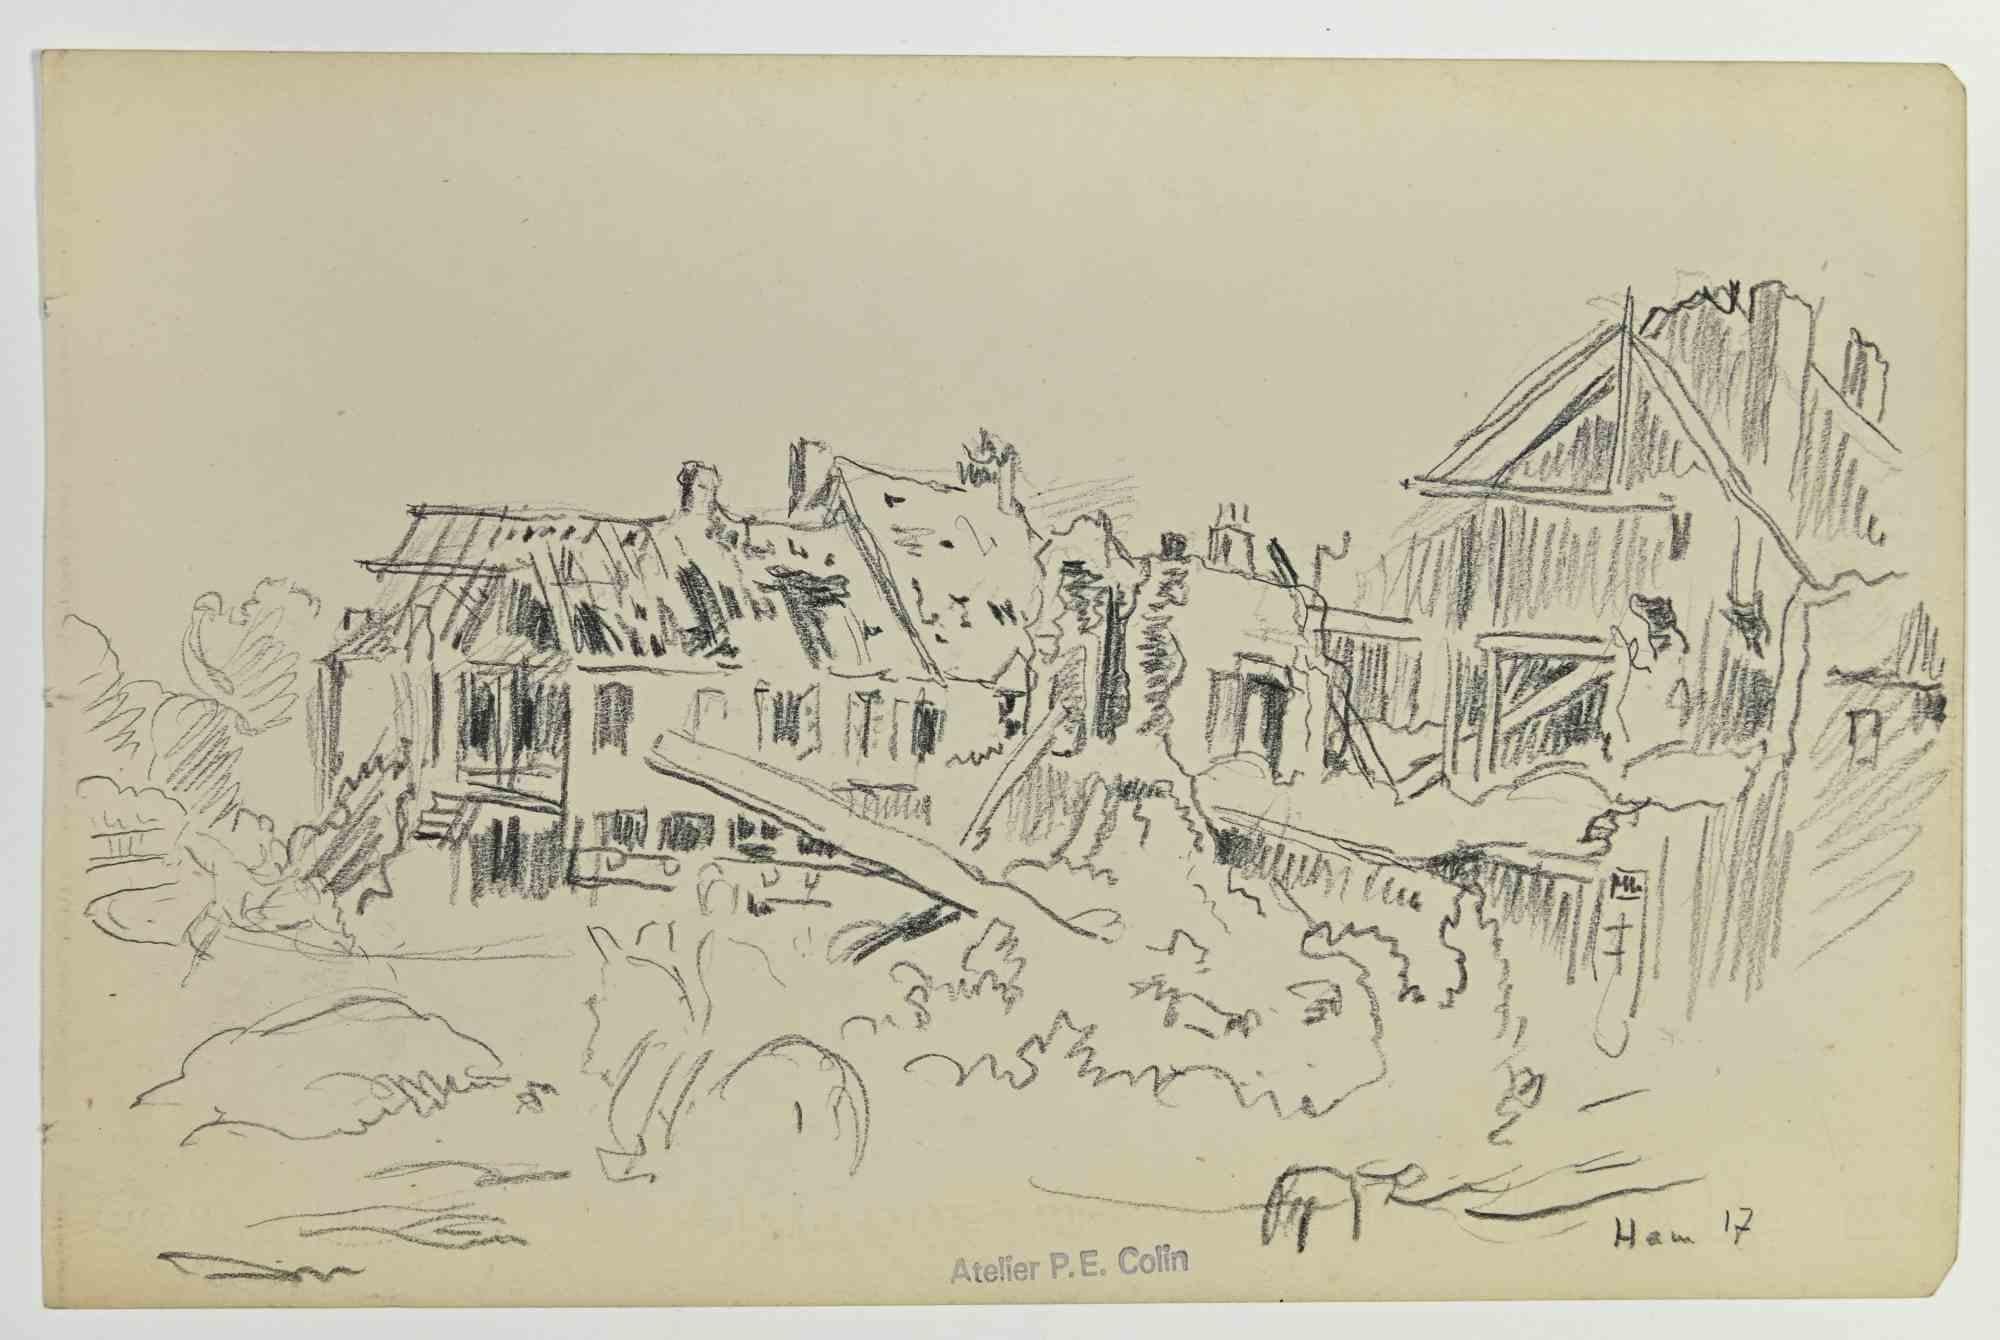 Zerstörte Häuser ist eine Zeichnung von Paul Emile Colin aus dem frühen 20. Jahrhundert.

Kohlestift auf elfenbeinfarbenem Papier

Auf der Unterseite gestempelt.

Guter Zustand mit leichten Stockflecken.

Das Kunstwerk wird durch geschickte